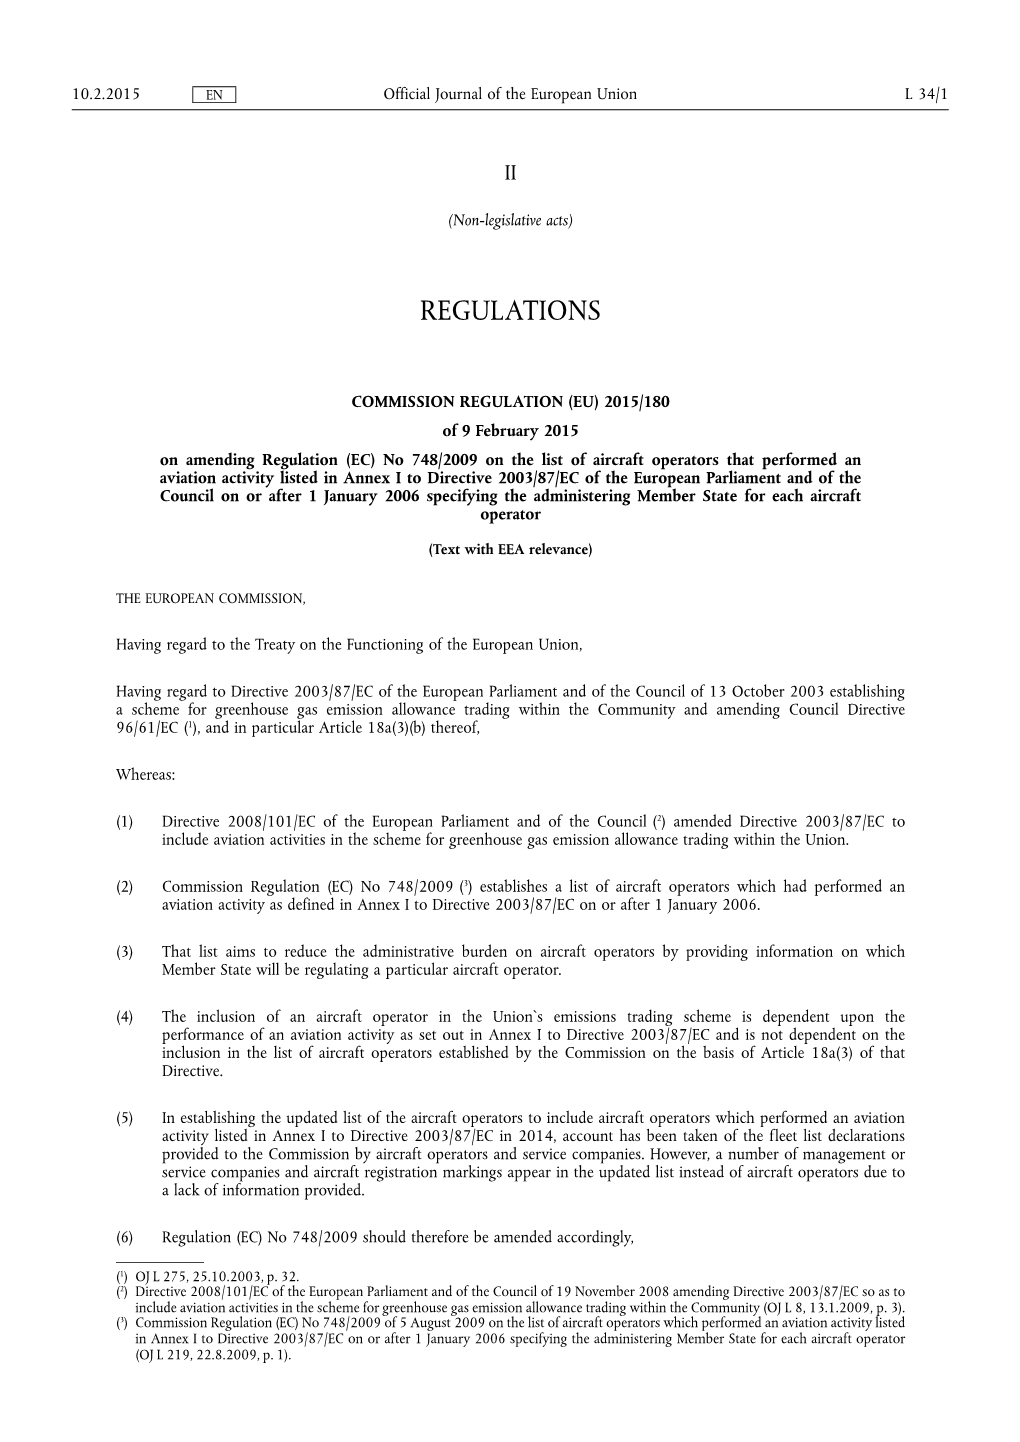 Commission Regulation (Eu) 2015